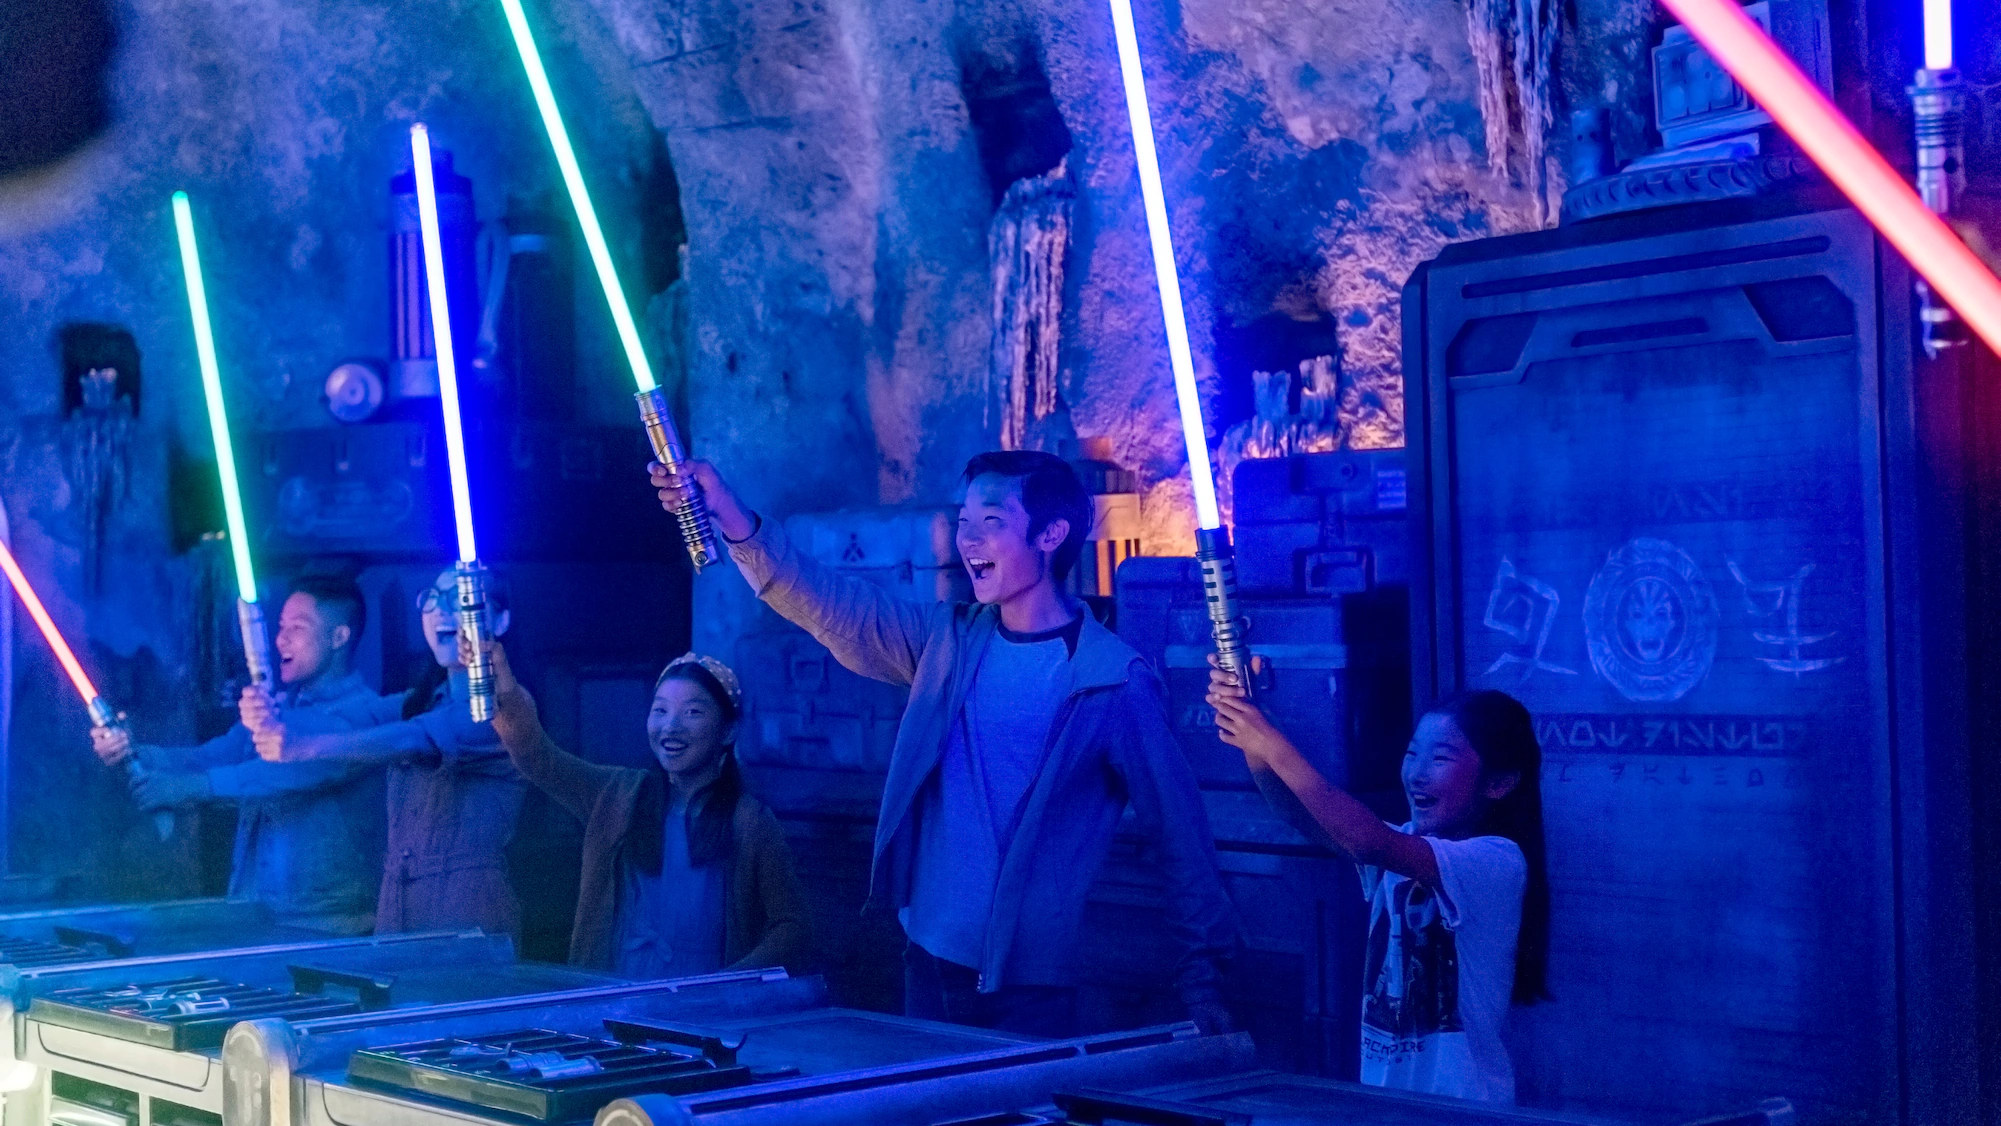 Le sabre laser sera bientôt disponible dans un parc d'attraction. © Disney